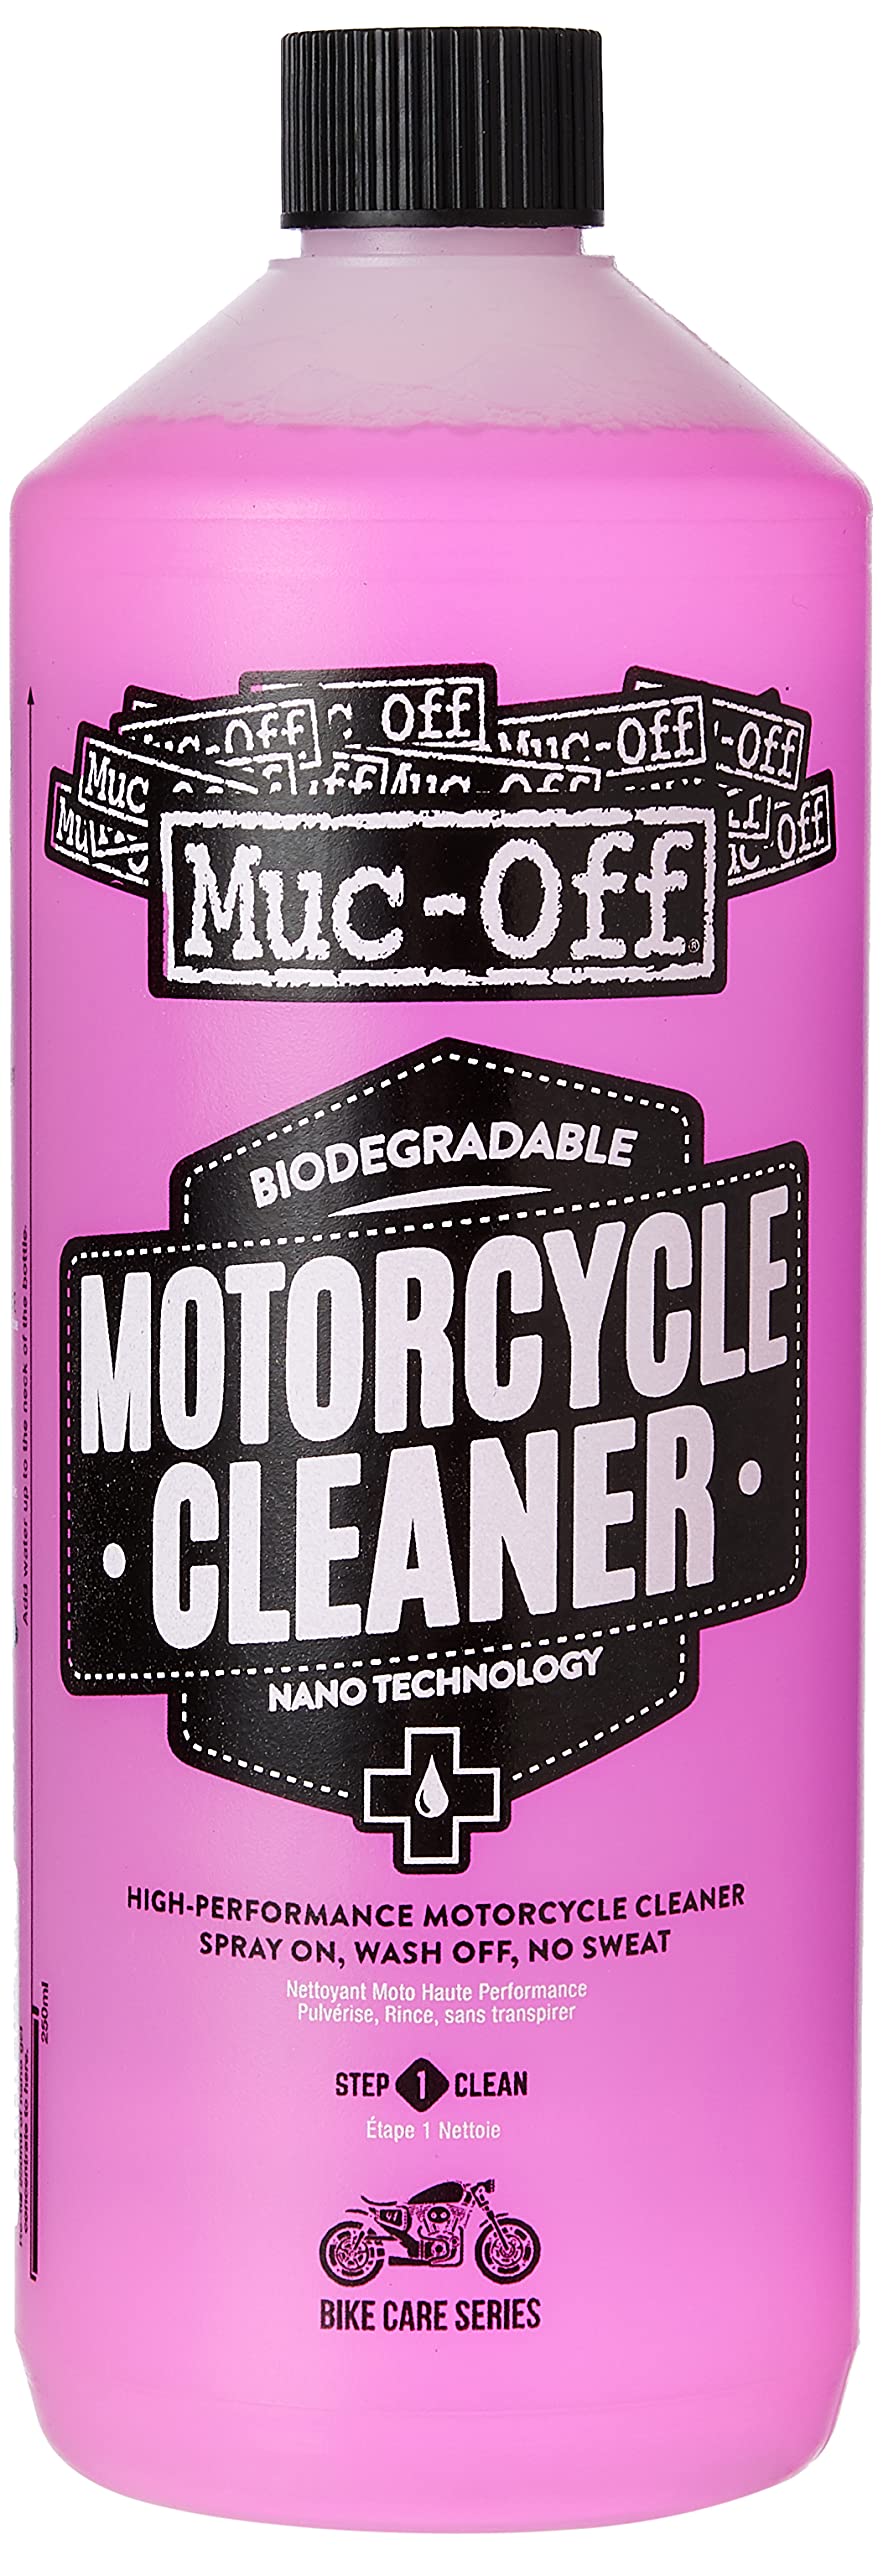 Muc Off Nano-Tech Motorcycle Cleaner Motorrad Reiniger 1 l - Hochwirksames, Biologisch Abbaubares Motorrad Reinigungsmittel Spray - Sicher auf Allen Oberflächen und für Alle Motorradtypen Geeignet von Muc-Off